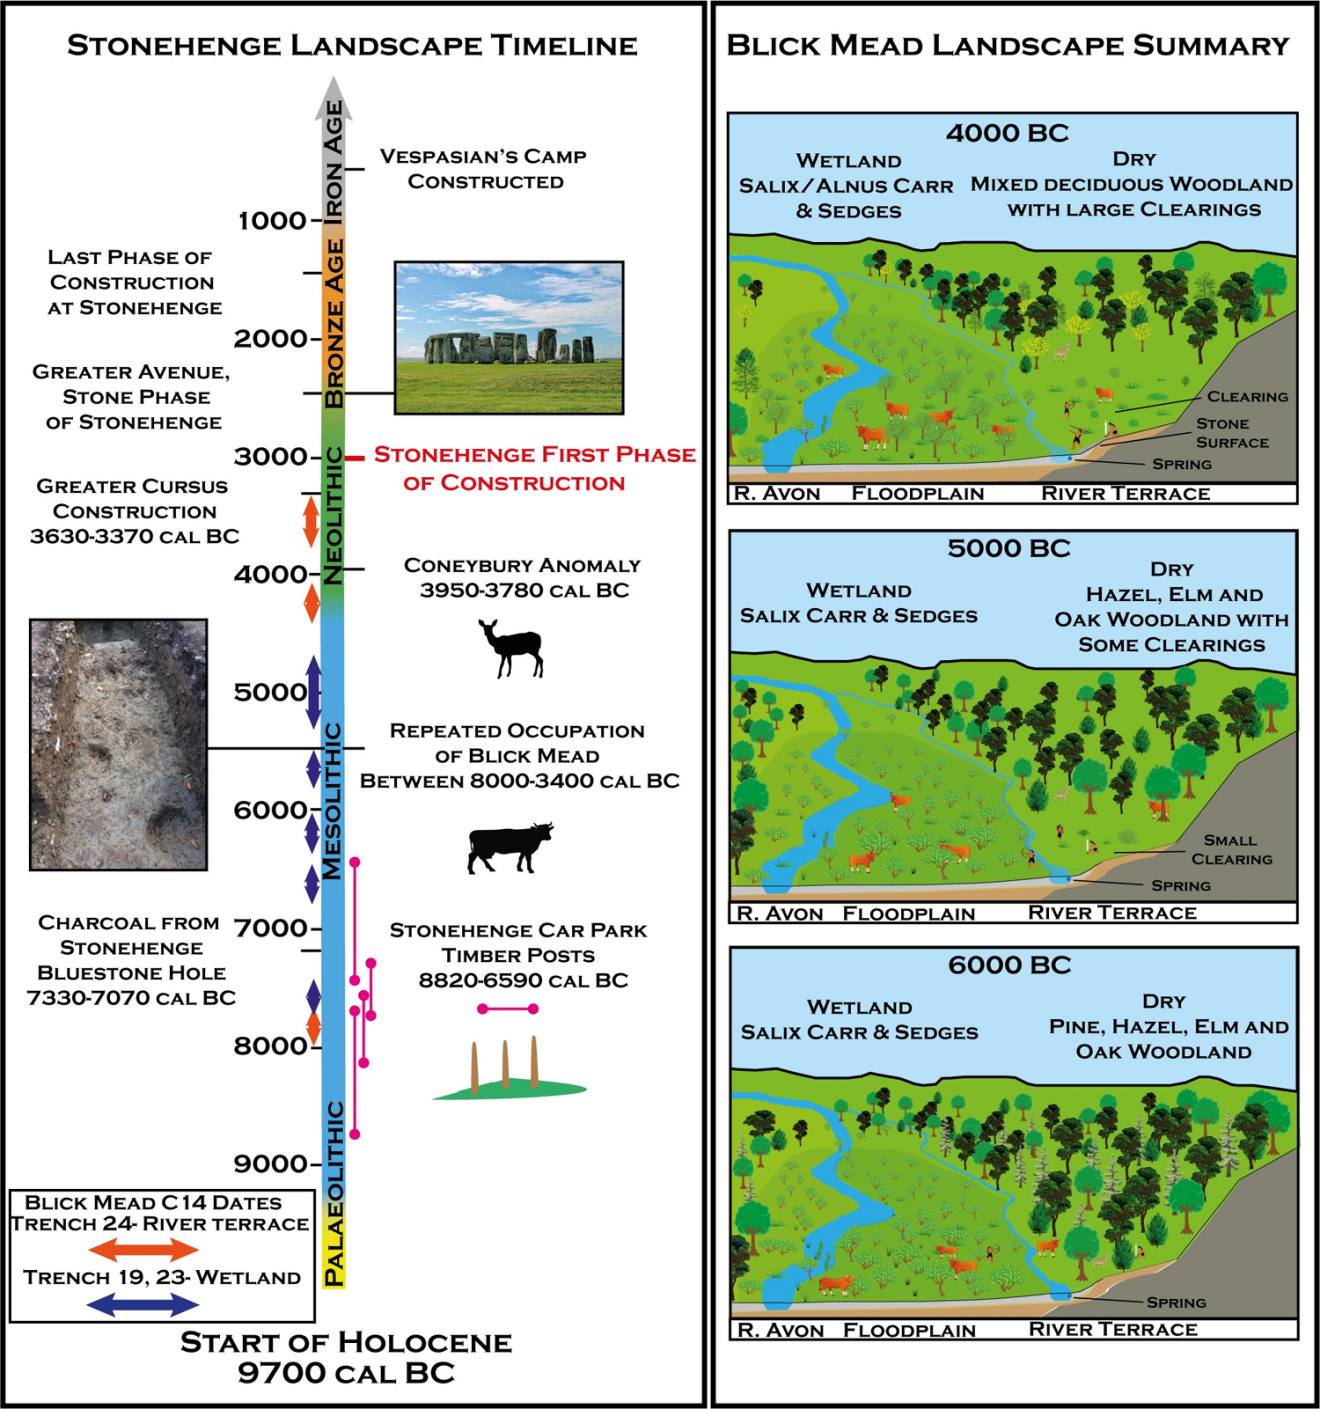 A) Cronología del paisaje de Stonehenge, incluidas las fechas de radiocarbono de Blick Mead y otros sitios arqueológicos importantes del Patrimonio Mundial de Stonehenge. B) Una representación del desarrollo de la historia de la vegetación en Blick Mead basada en los datos paleoambientales.